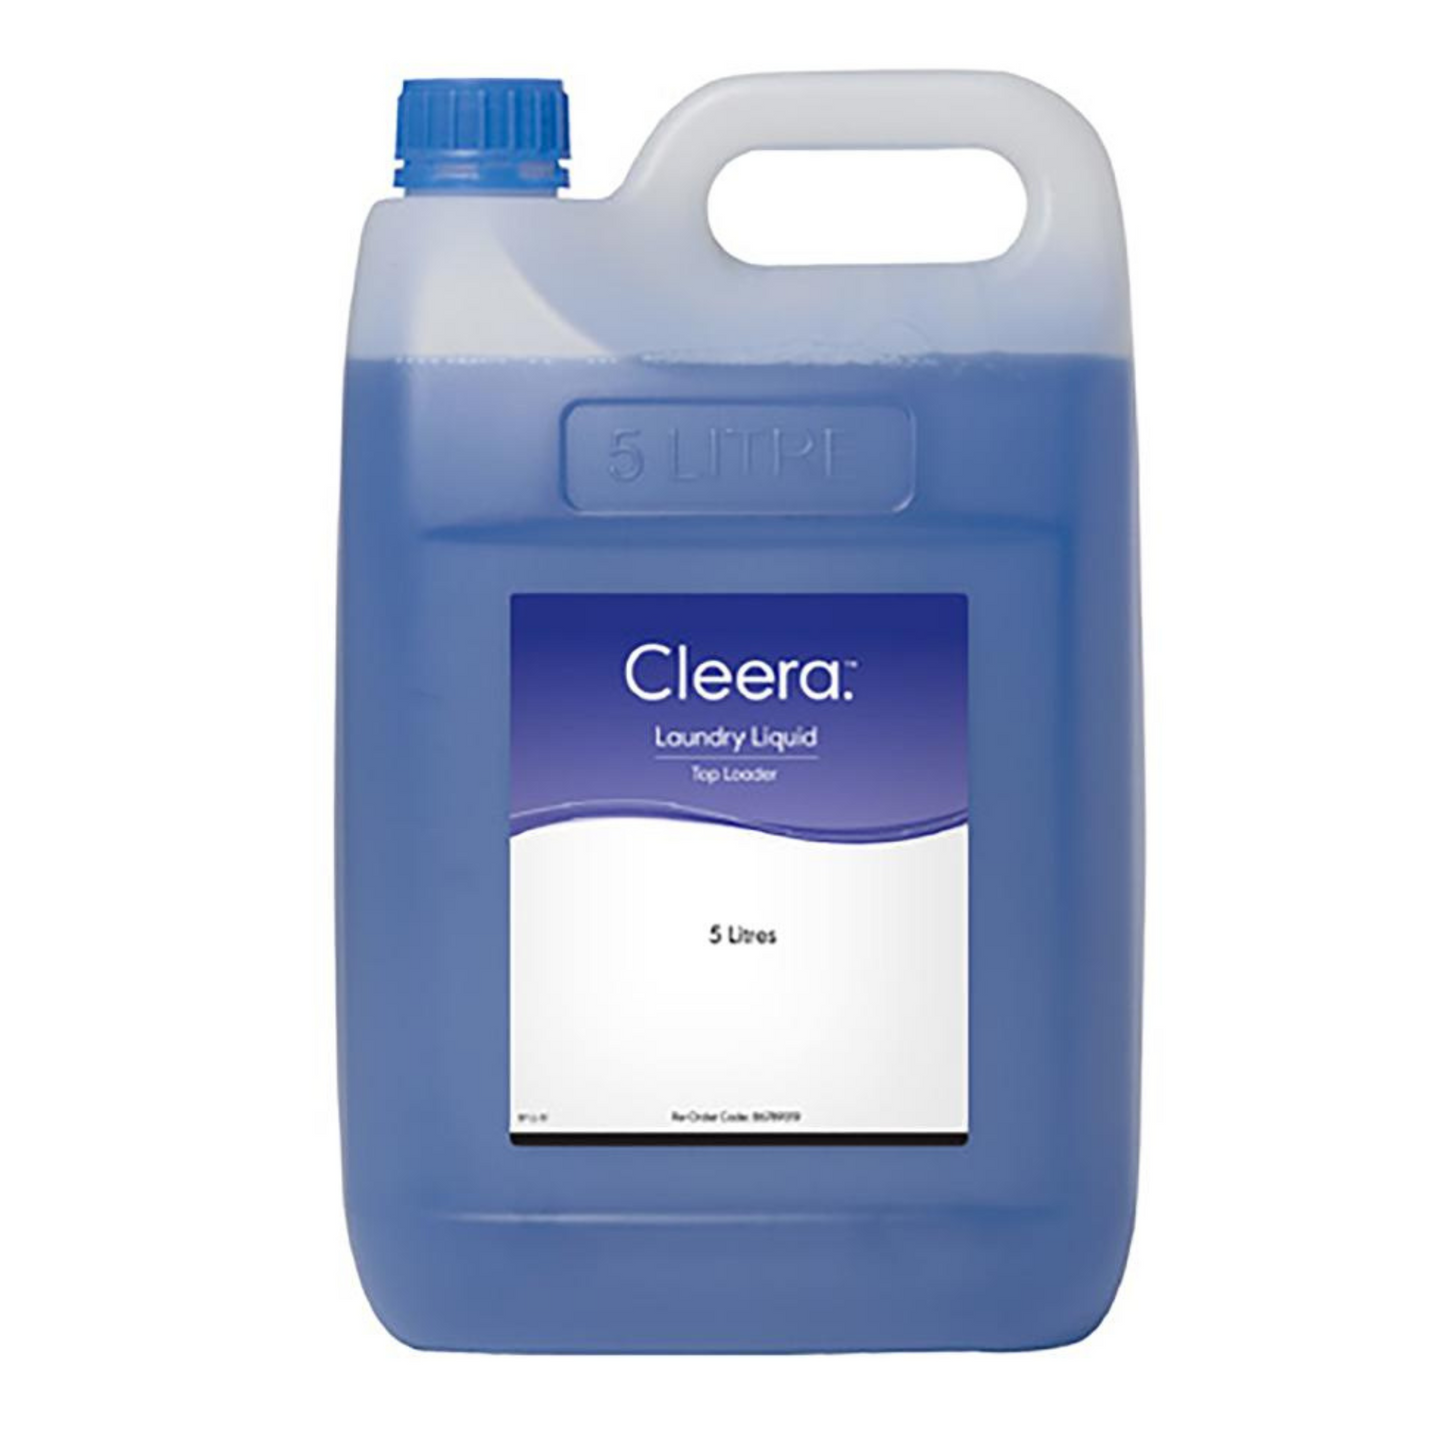 Cleera Laundry Liquid Top Loader 5L